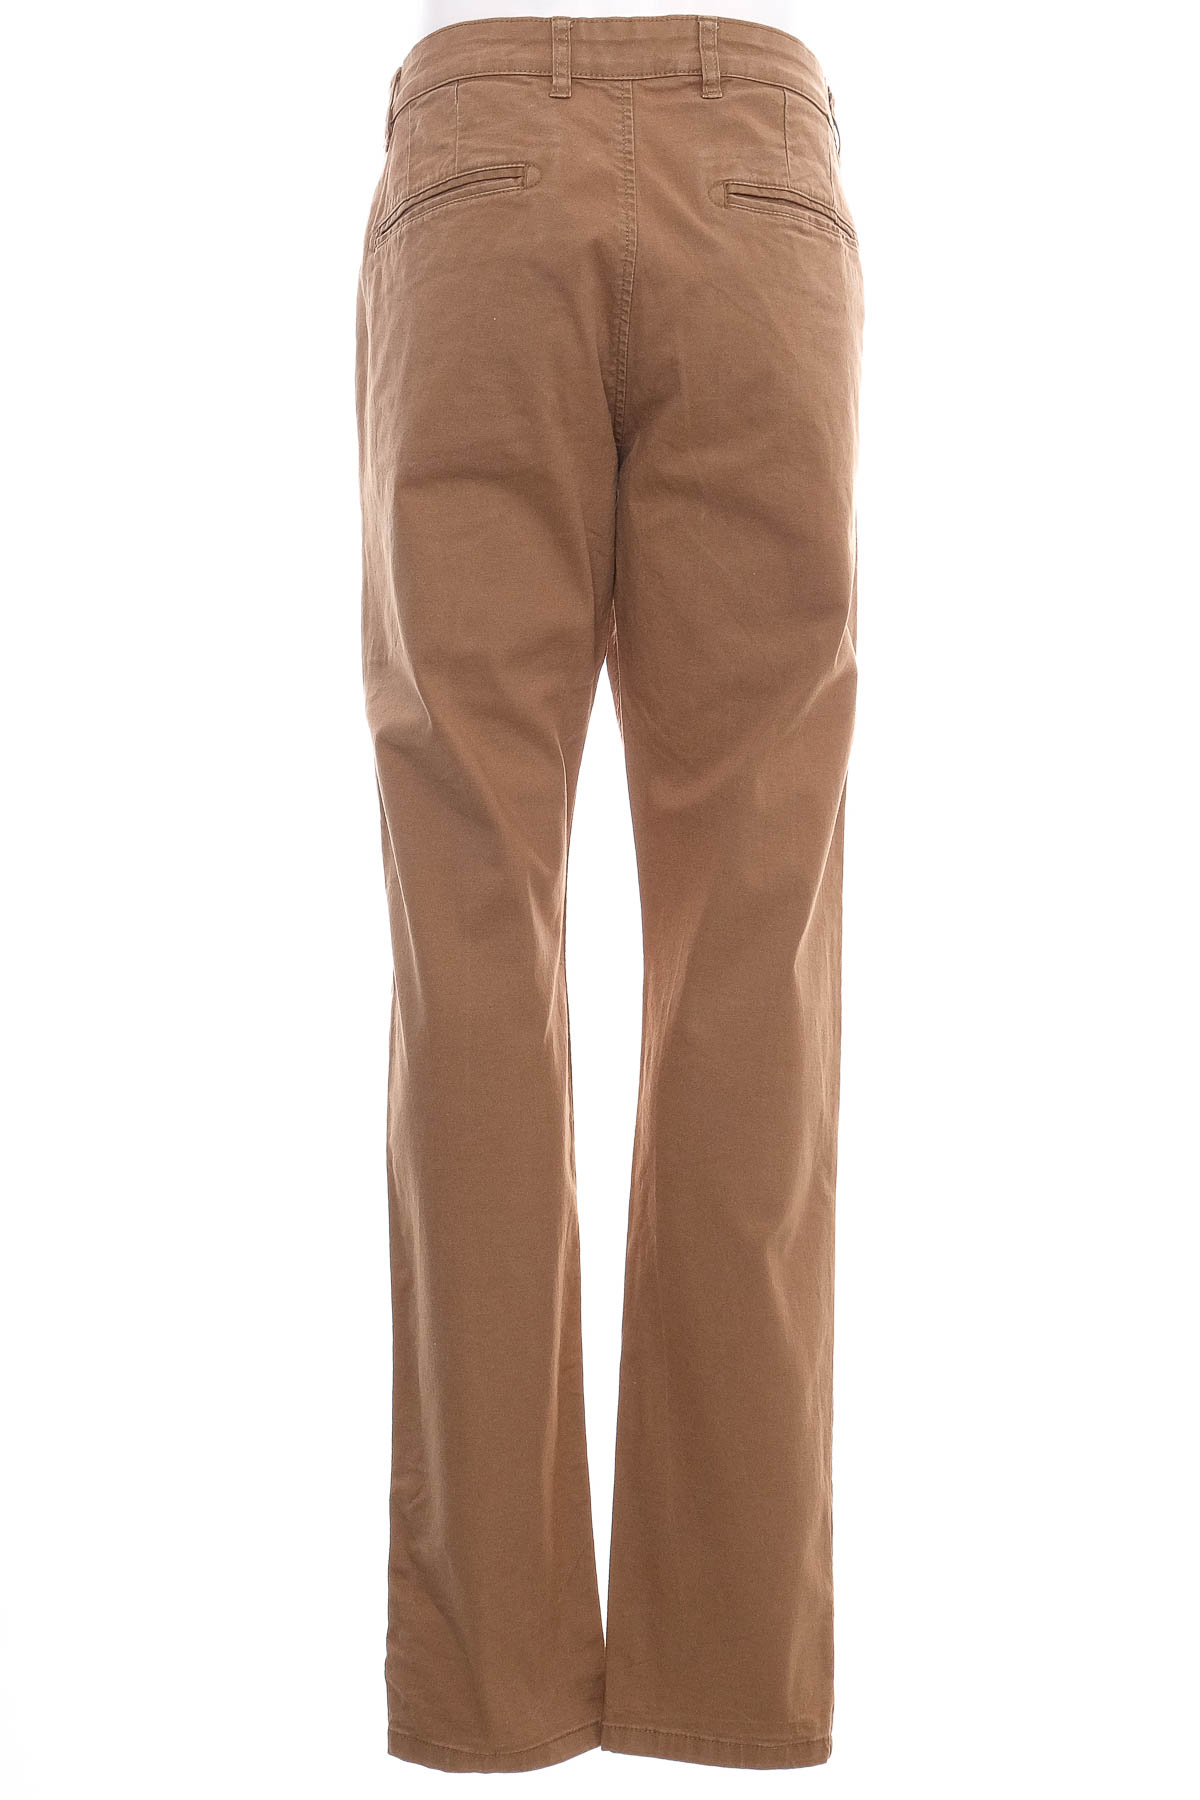 Men's trousers - ESPRIT Denim - 1